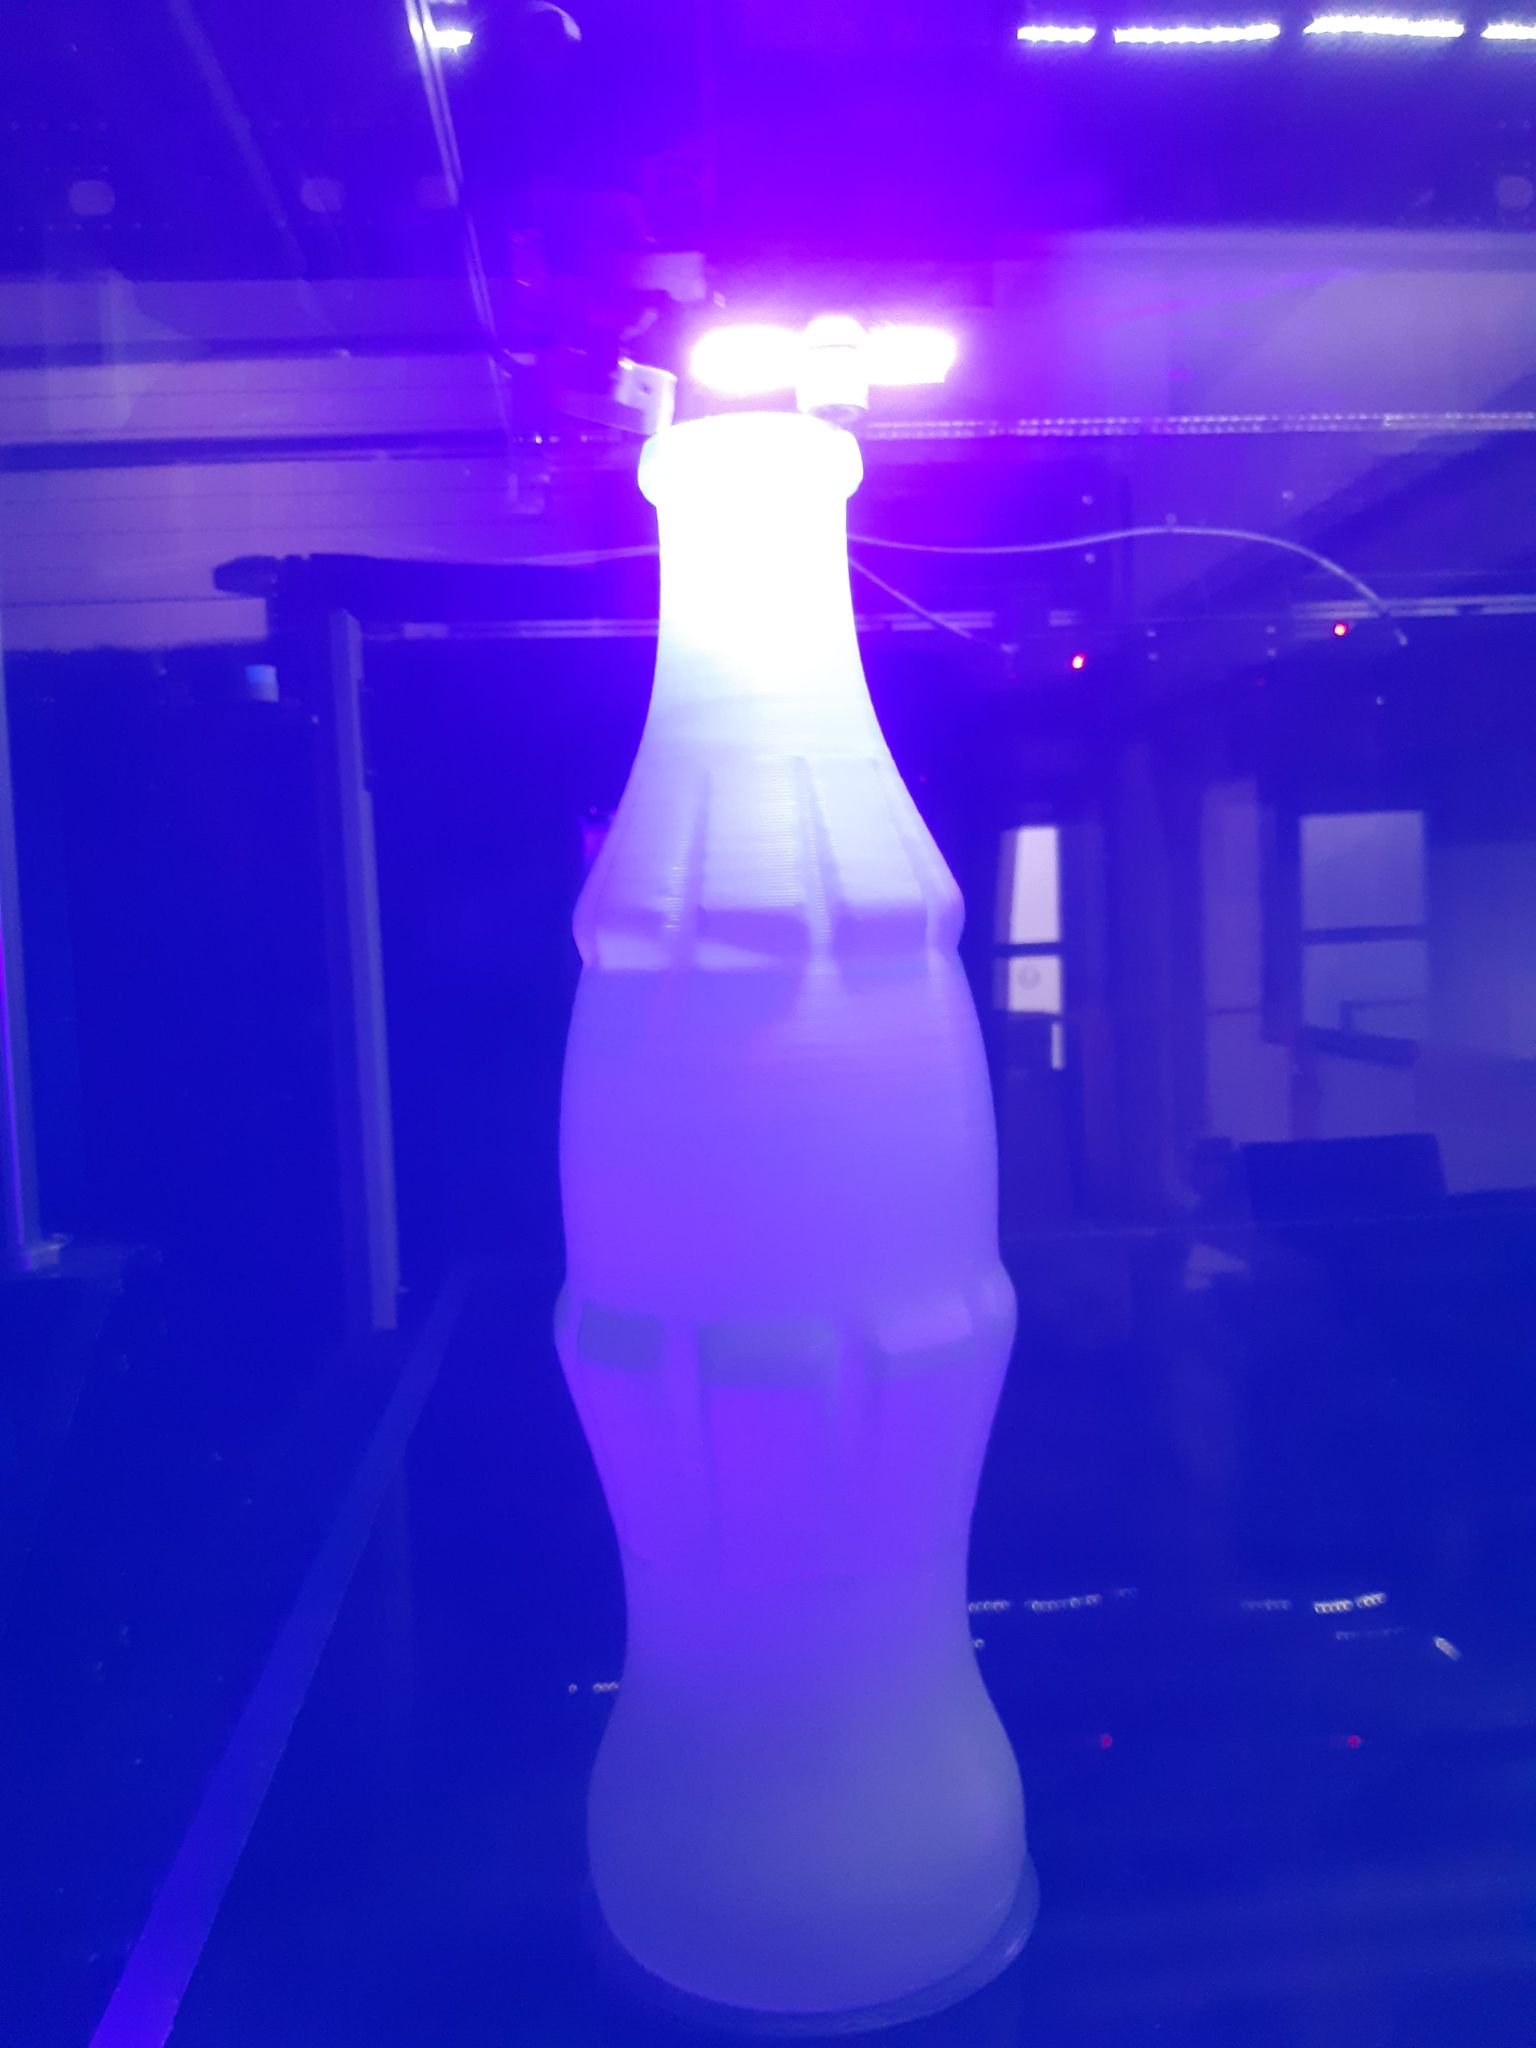 afbeelding van 3D fles, 3D coca cola fles, 3D champagnefles, 3D print, 3D printen, 3D laten printen, 3D printing, 3D art, SLA printen, SLA printing, 3D druck, 3D drucker, XXL 3D druck, XXL printing, XXL printen, largeformat3Dprinting, stampa 3D, 3D model, 3D prototyping, 3D shopfront, 3D storefront